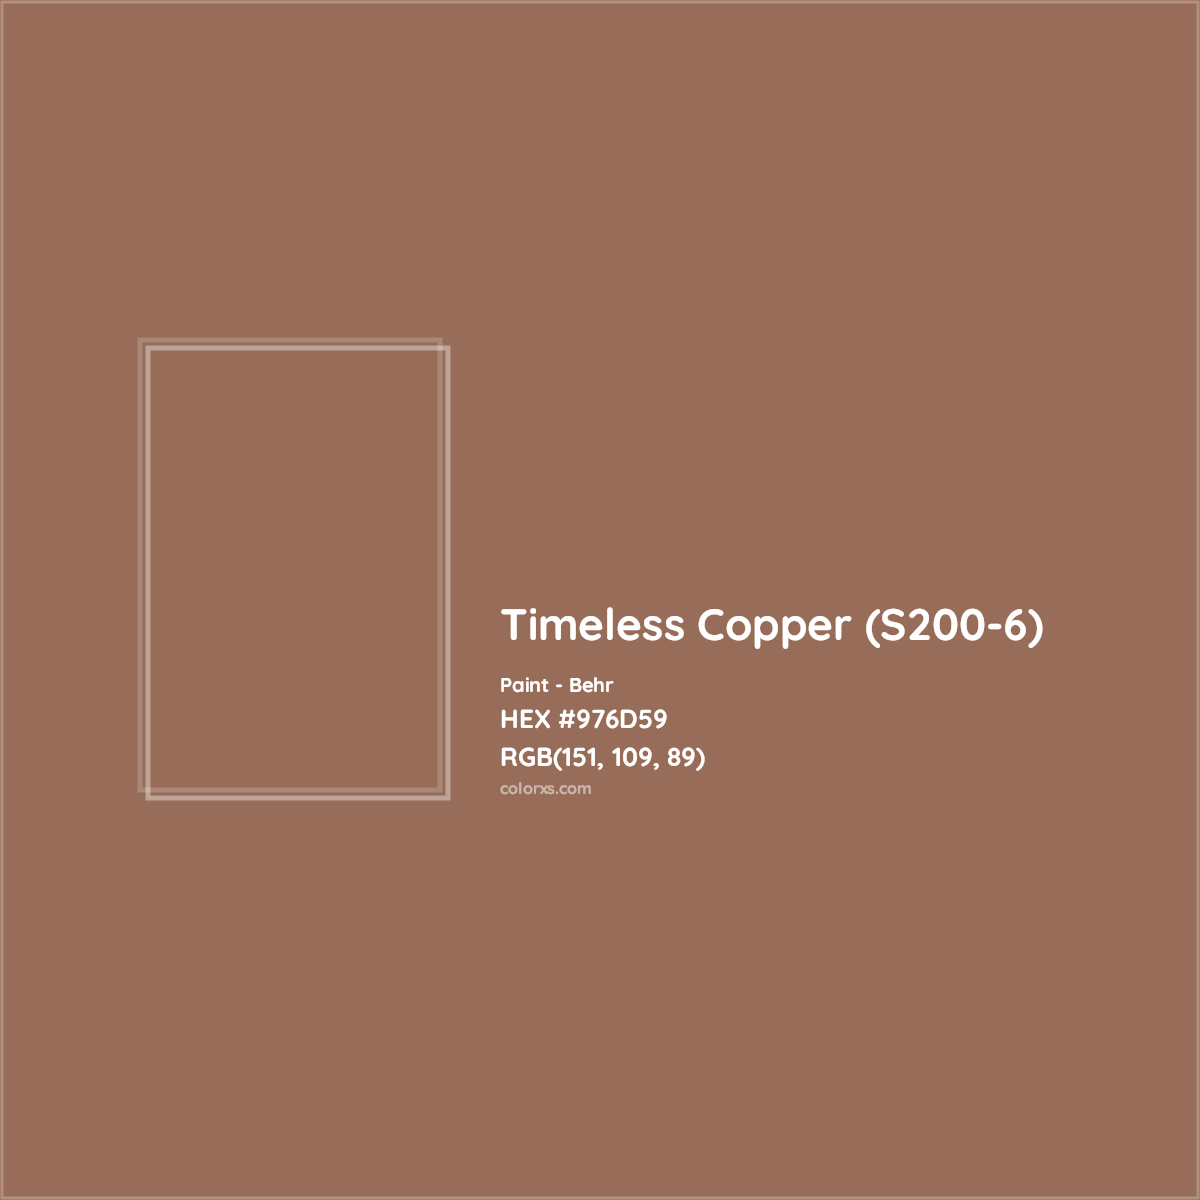 HEX #976D59 Timeless Copper (S200-6) Paint Behr - Color Code